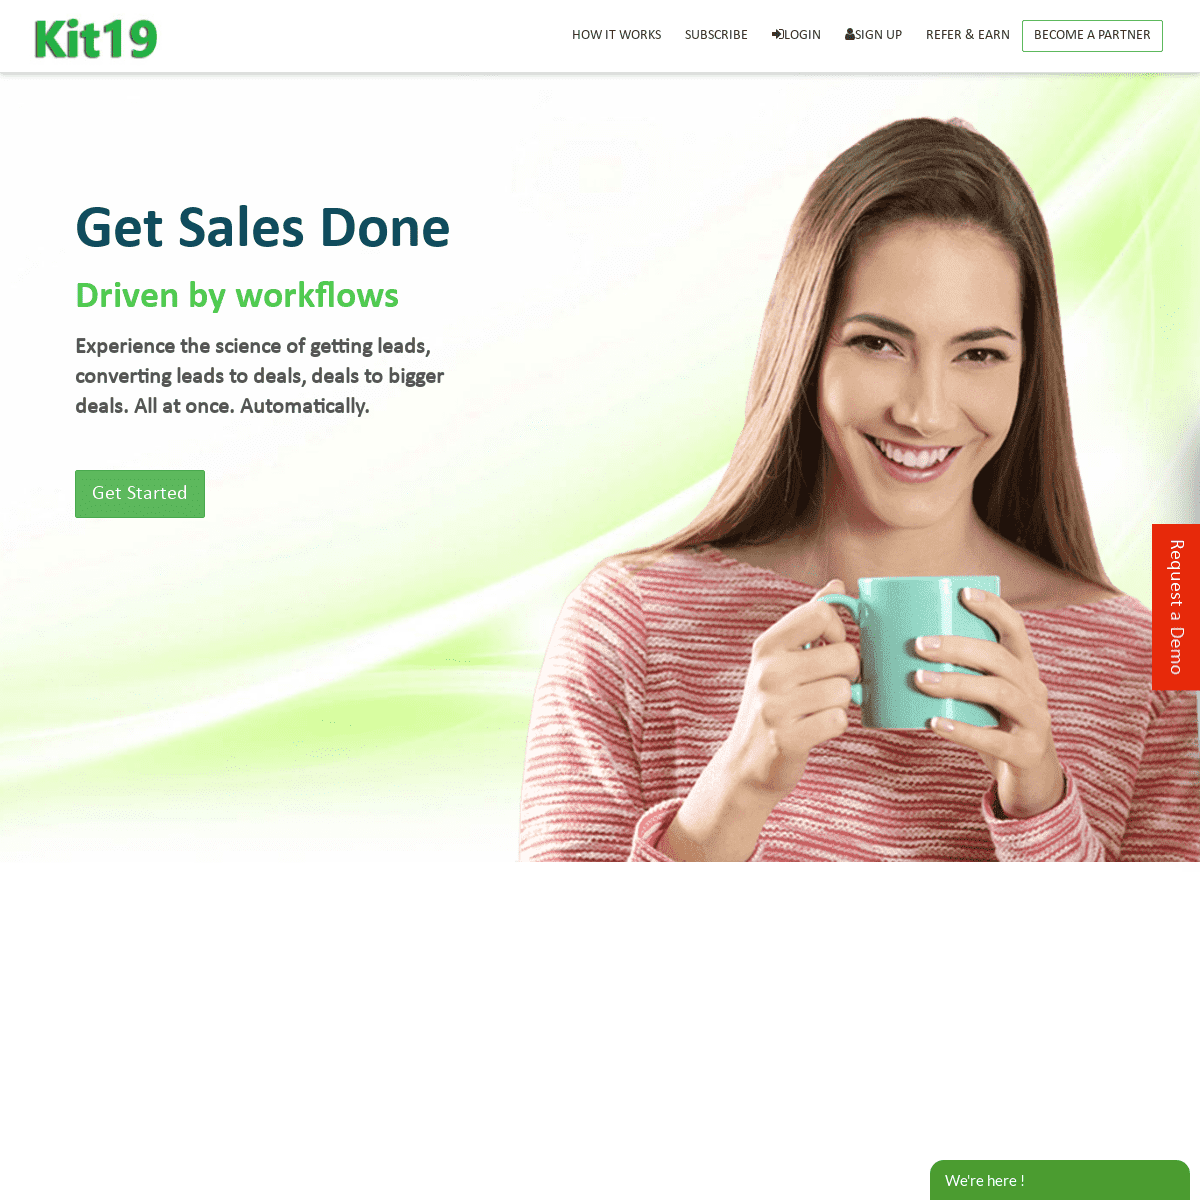 A complete backup of kit19.com